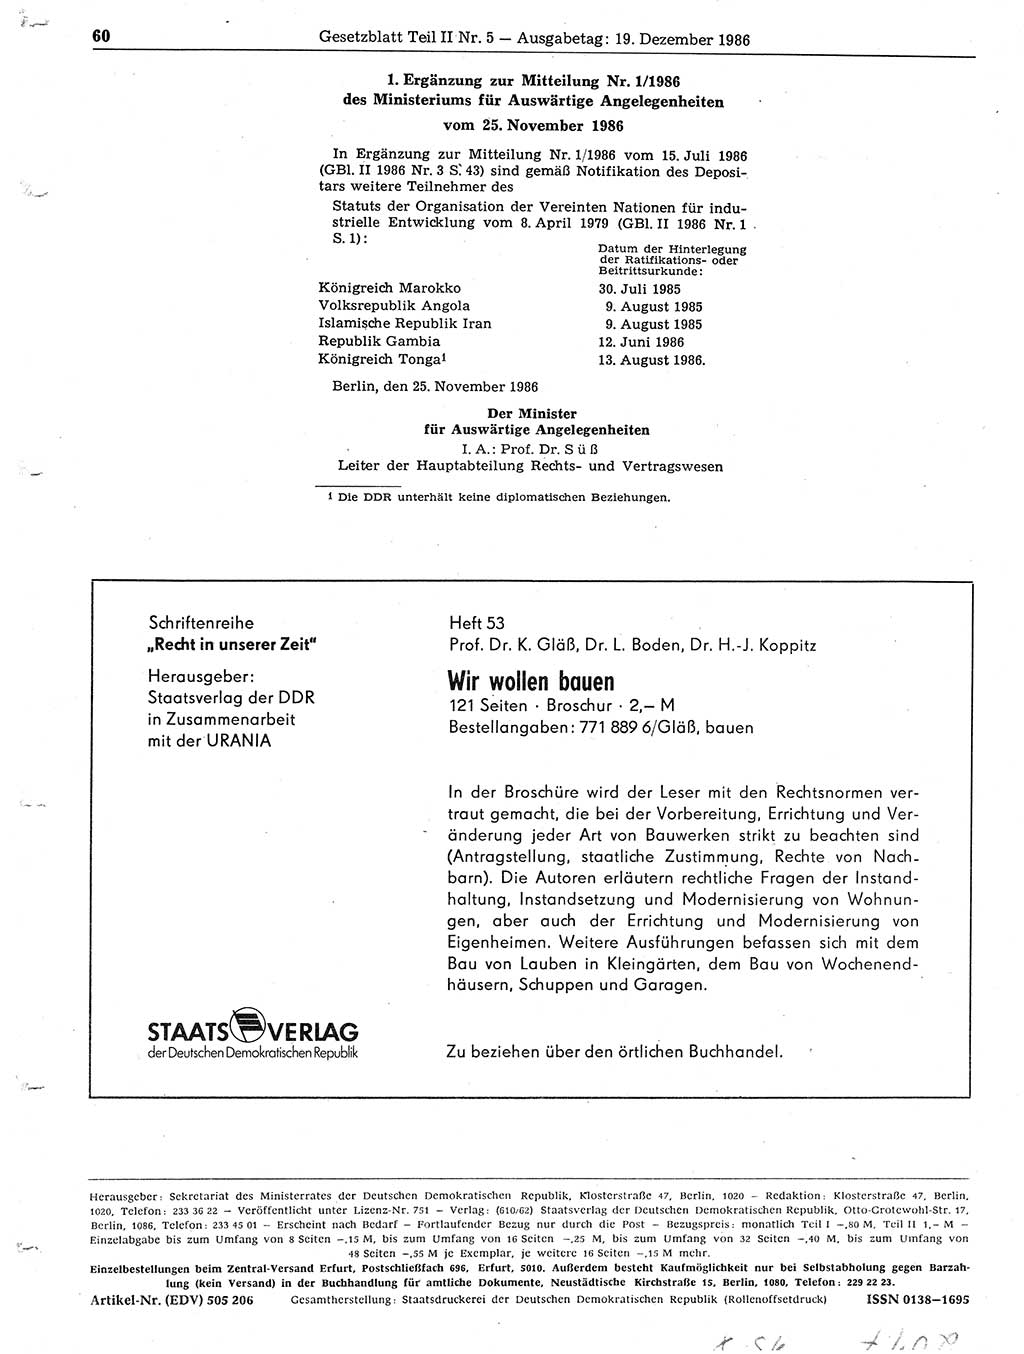 Gesetzblatt (GBl.) der Deutschen Demokratischen Republik (DDR) Teil ⅠⅠ 1986, Seite 60 (GBl. DDR ⅠⅠ 1986, S. 60)